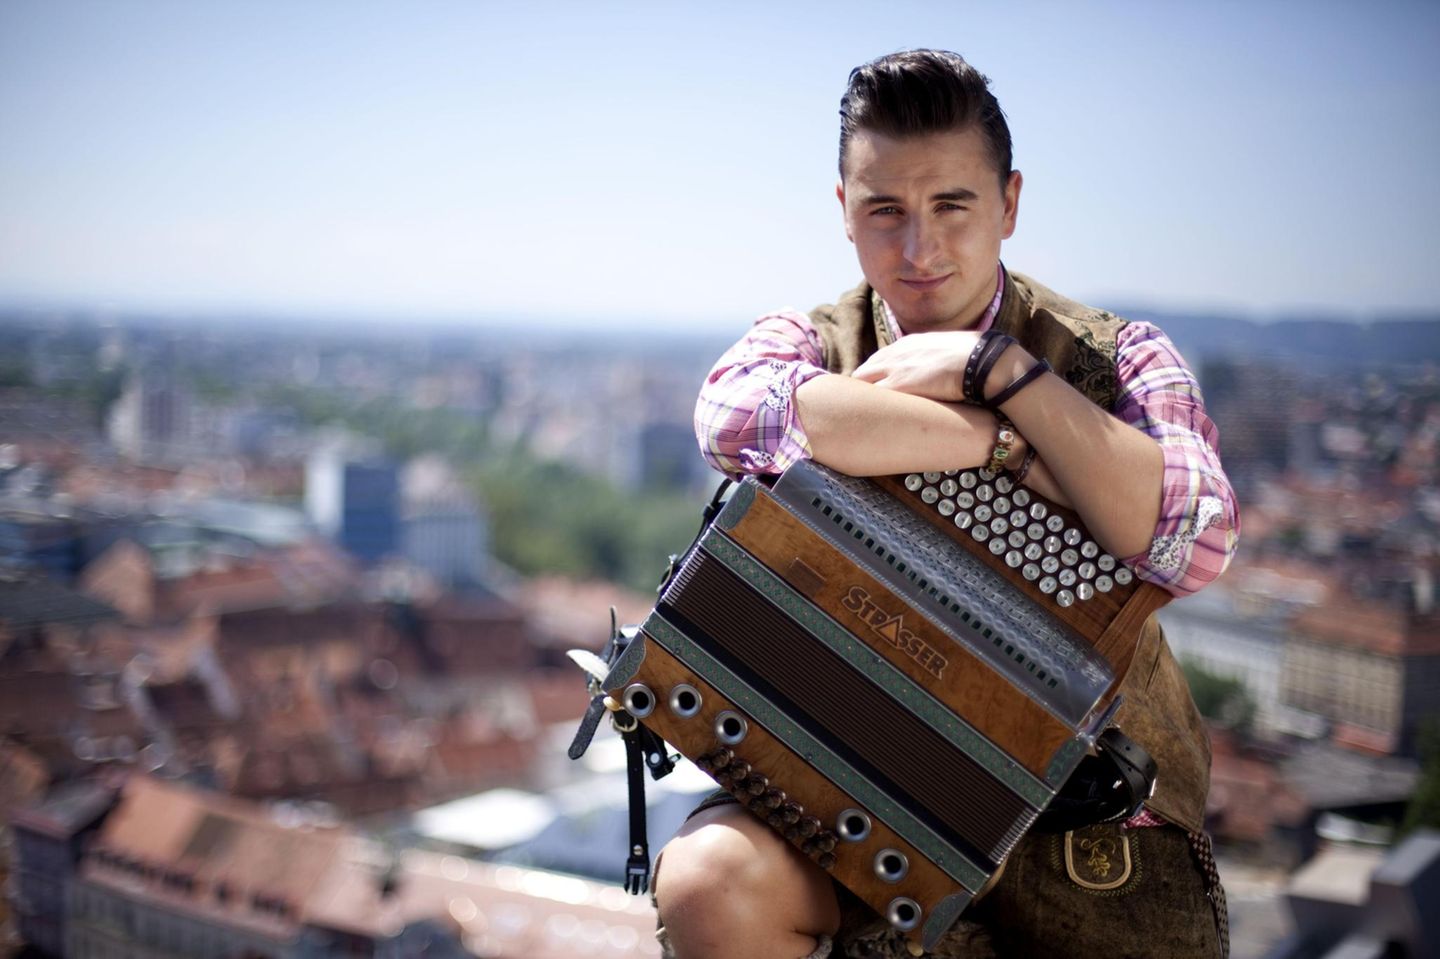 Andreas Gabalier bezeichnet sich selbst als "Volks-Rock'n'Roller", zu einem Musikmix aus Volksmusik und Rock singt er auf Deutsch beziehungsweise Österreichisch. 2010 konnte er damit sogar einen Echo gewinnen.